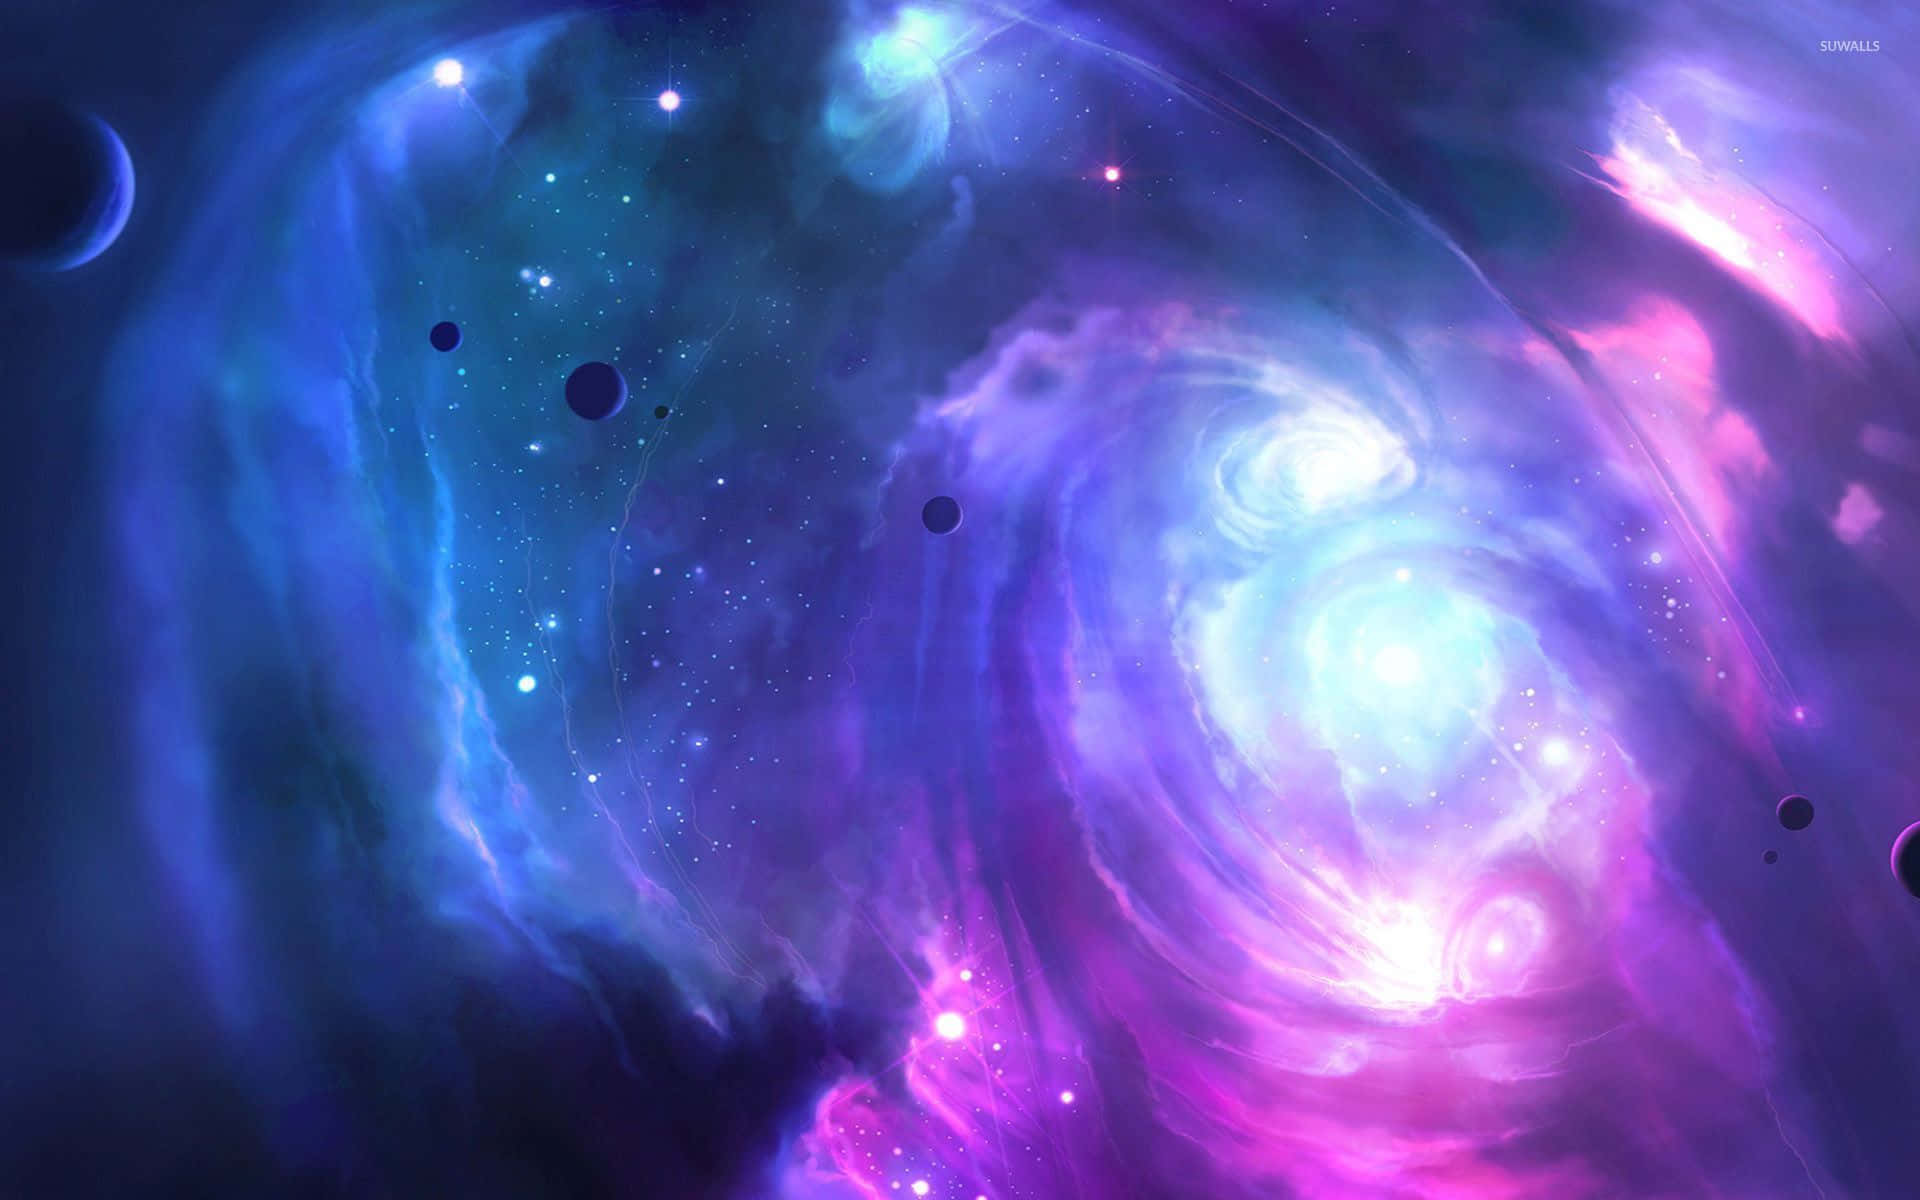 Ensmuk Nattehimmel Med Skyer Oplyst Af En Purpurfarvet Galakse